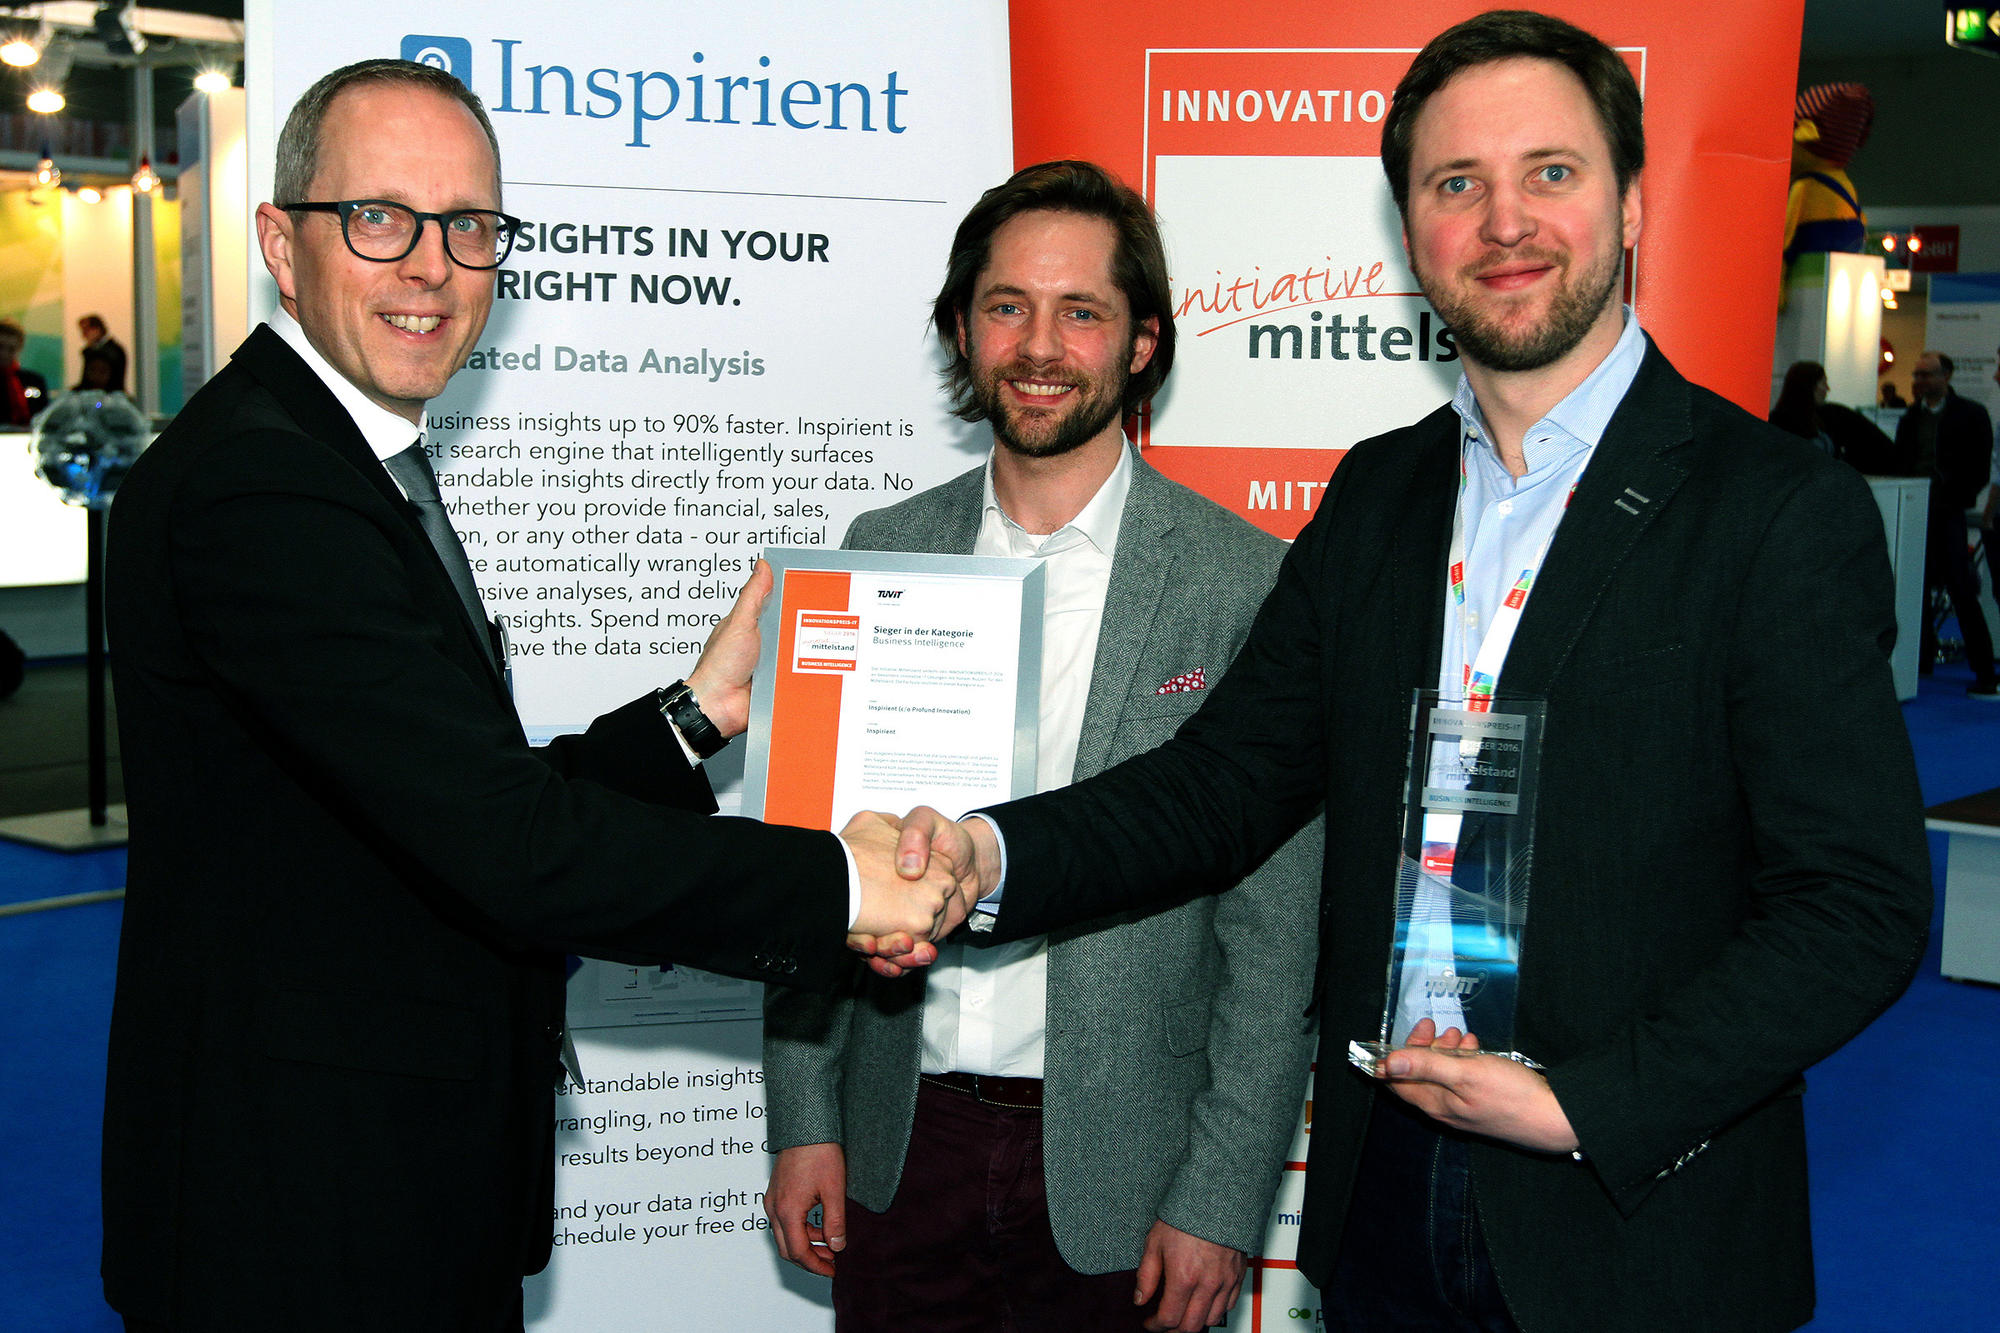 Rainer Kölmel, Geschäftsführer der Initiative Mittelstand, überreicht Guillaume Aimetti und Georg Wittenburg (v.l.n.r.) von Inspirient den „Innovationspreis-IT“ in der Kategorie „Business Intelligence“.